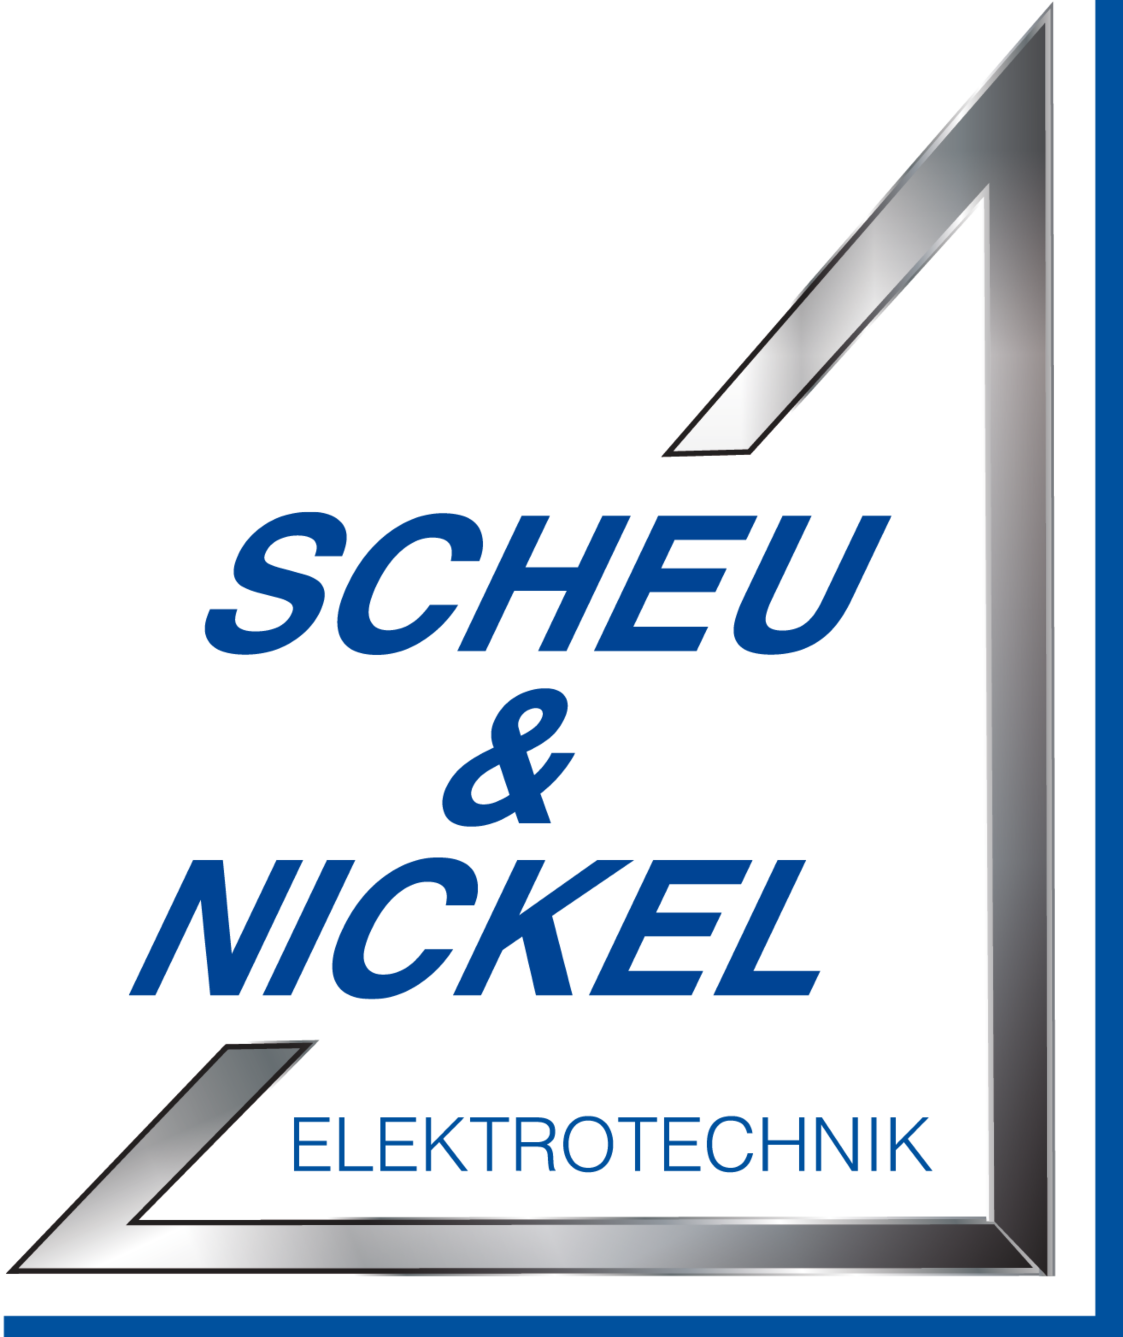 Planen Sie ihr Eigenheim und möchten Sie eine kompetente Beratung zu den Themen Elektroinstallationen und Alarmanlafgen? Kontaktieren Sie Scheu & Nickel GmbH in Villmar.